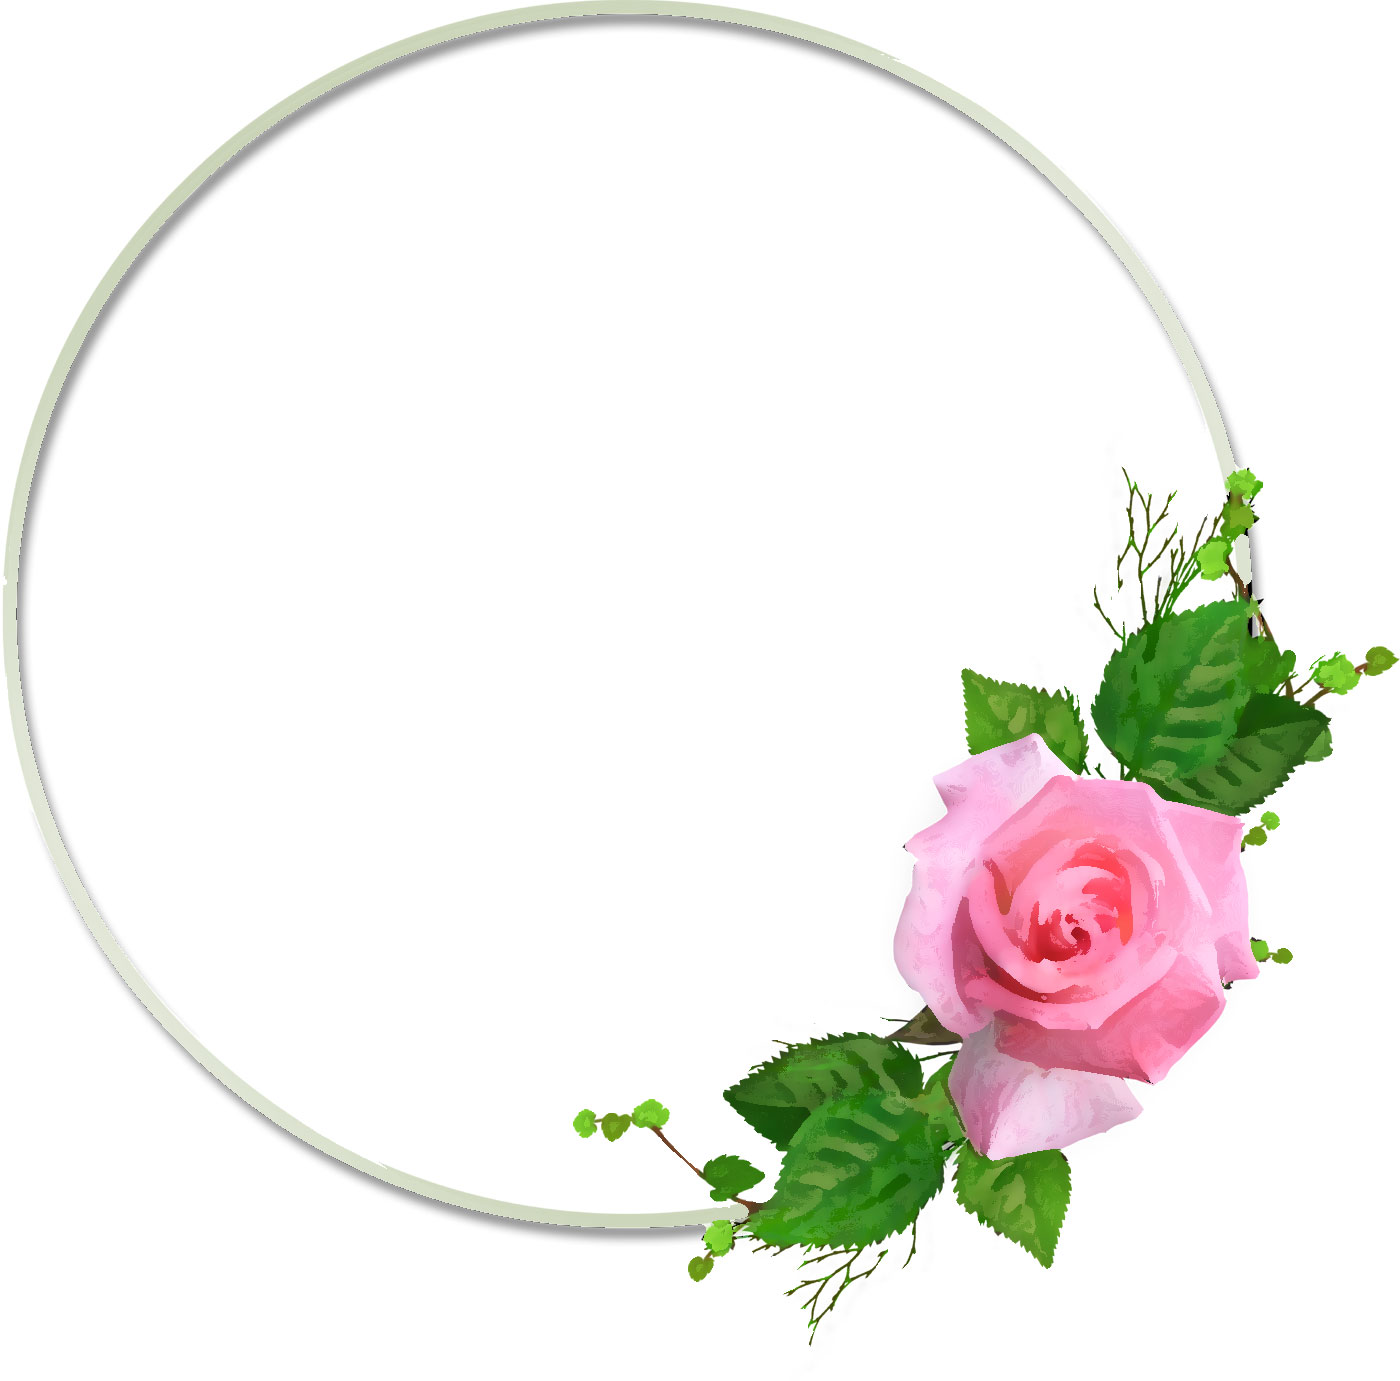 リアルな花のイラスト フリー素材 フレーム枠no 1118 ピンクのバラ 葉